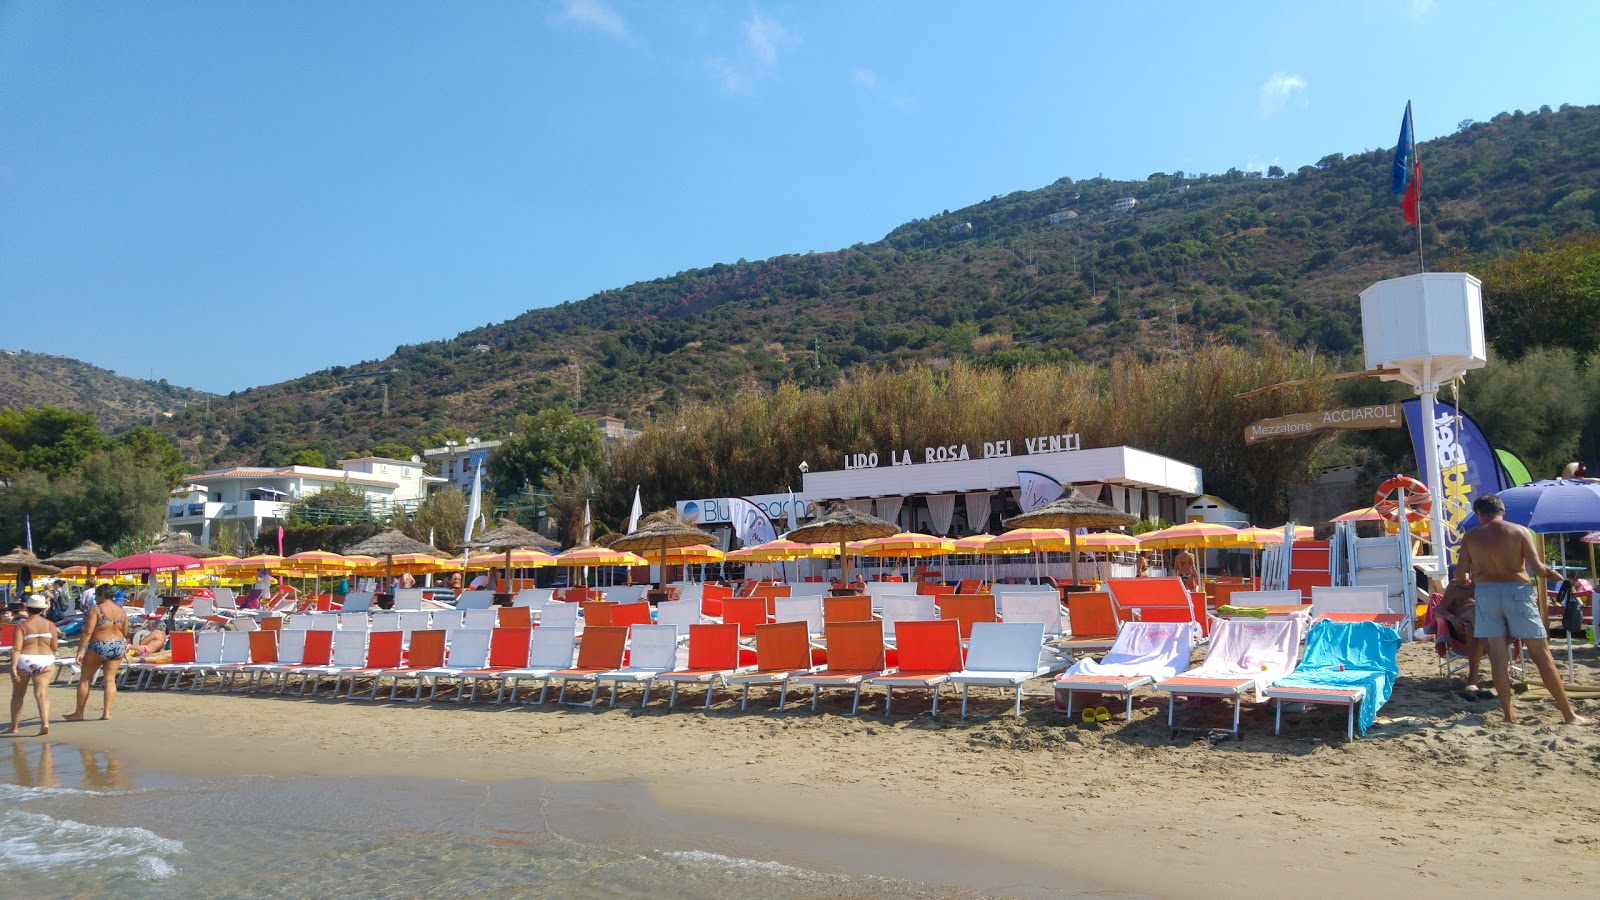 Acciaroli Plajı'in fotoğrafı geniş plaj ile birlikte